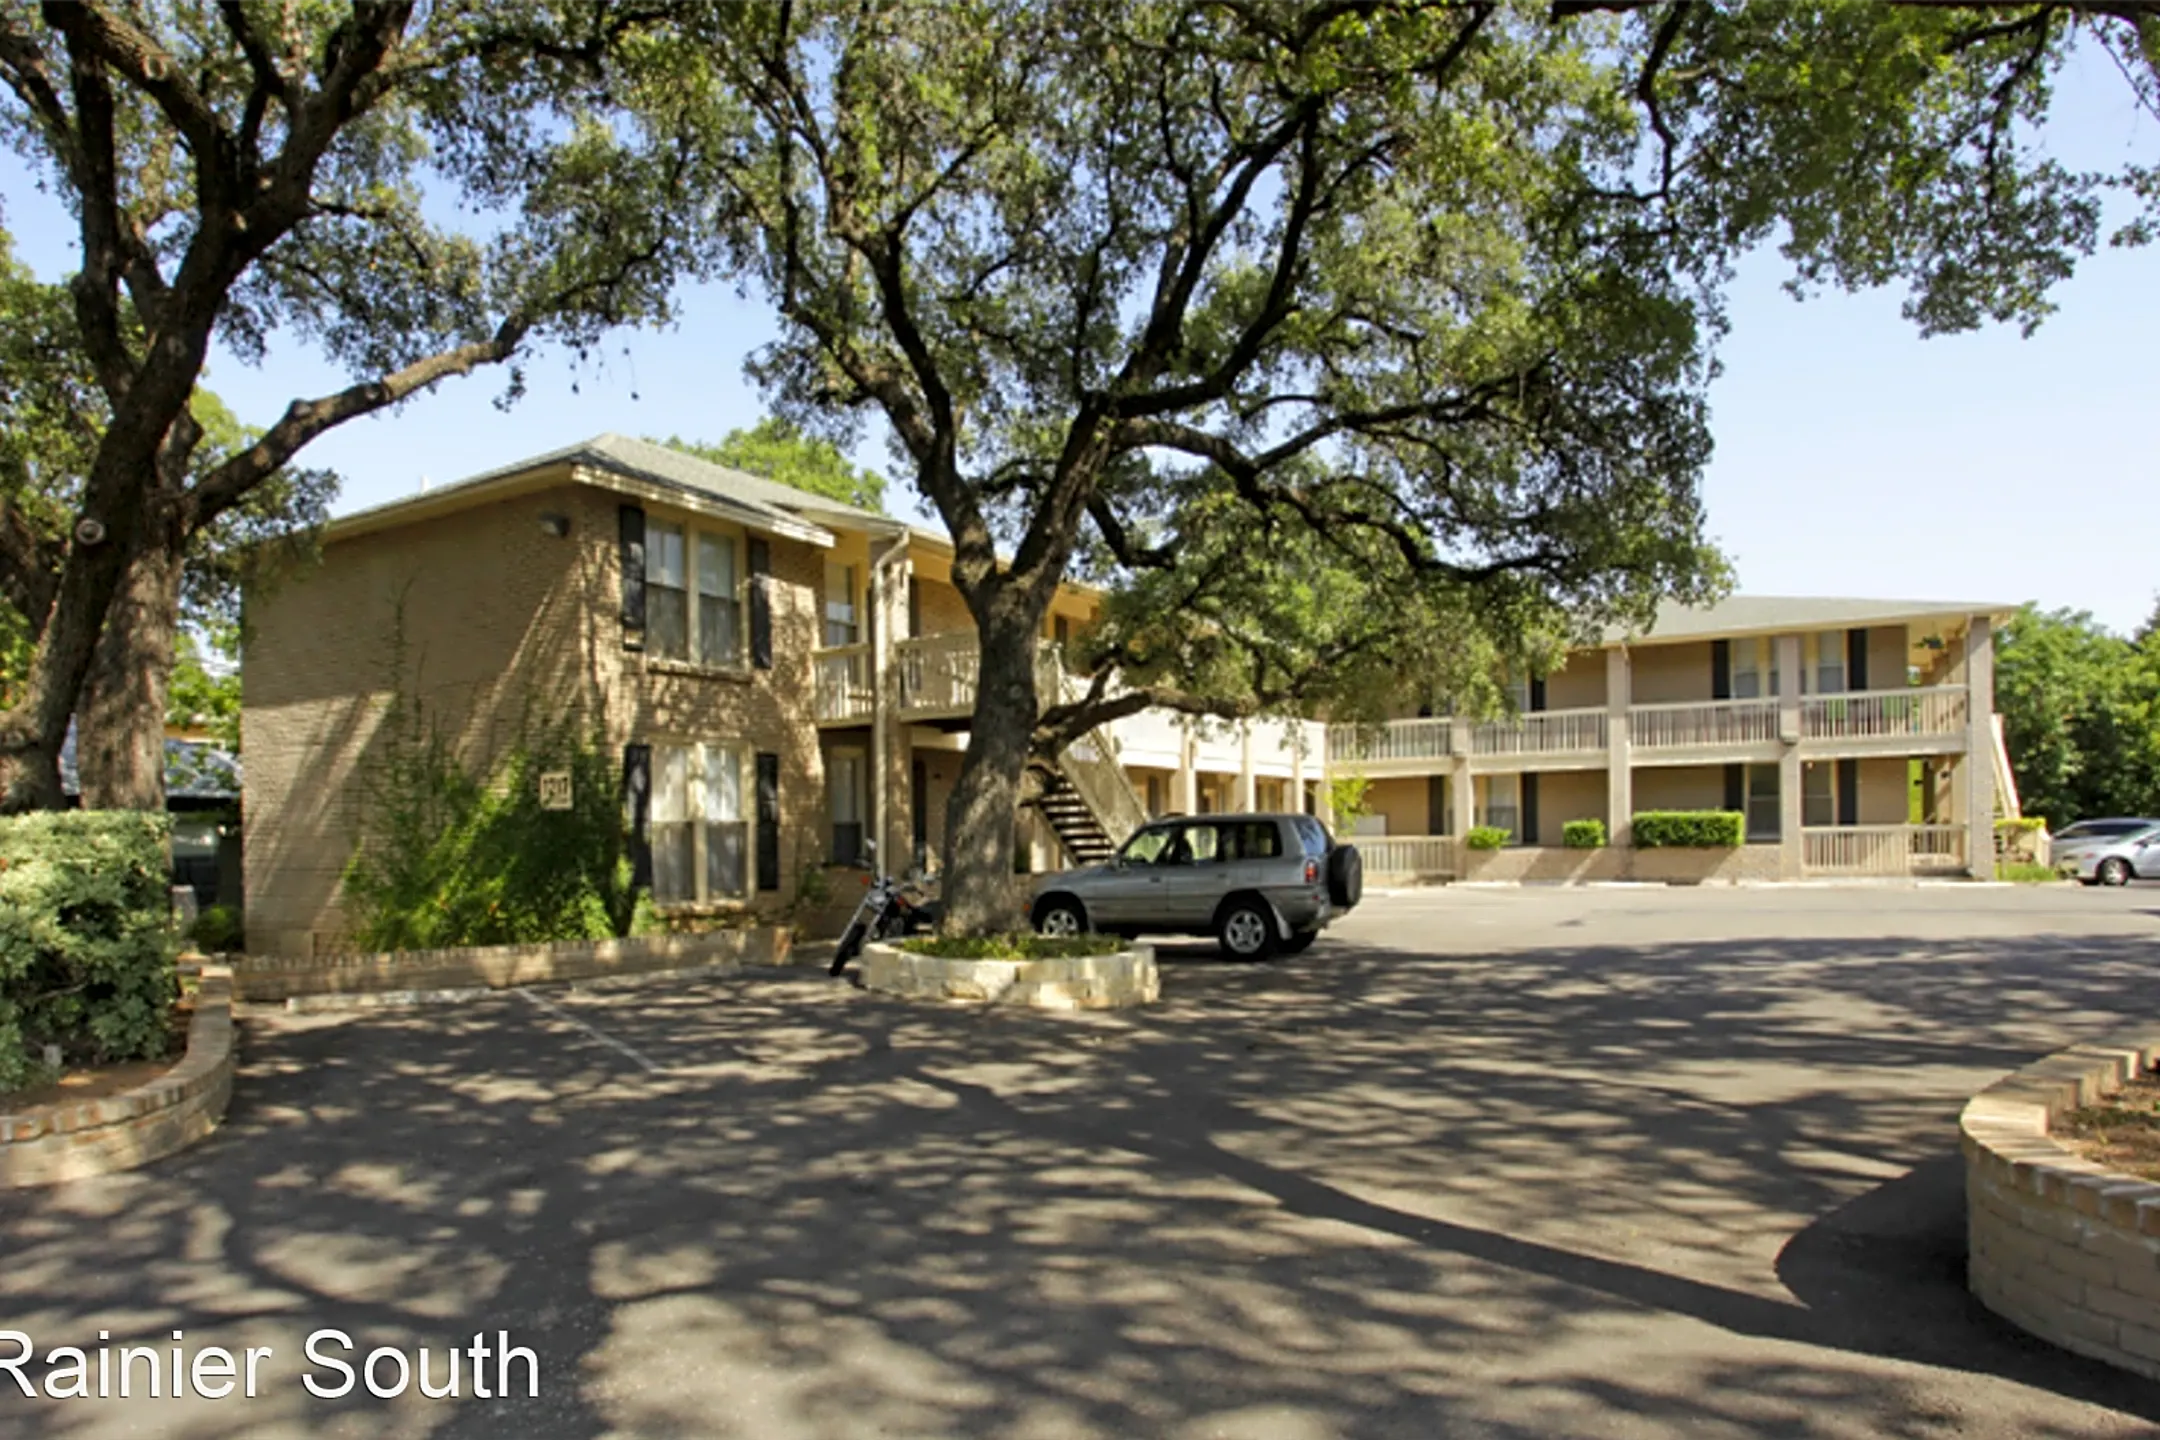 Building - Bouldin Creek Apartments - Austin, TX